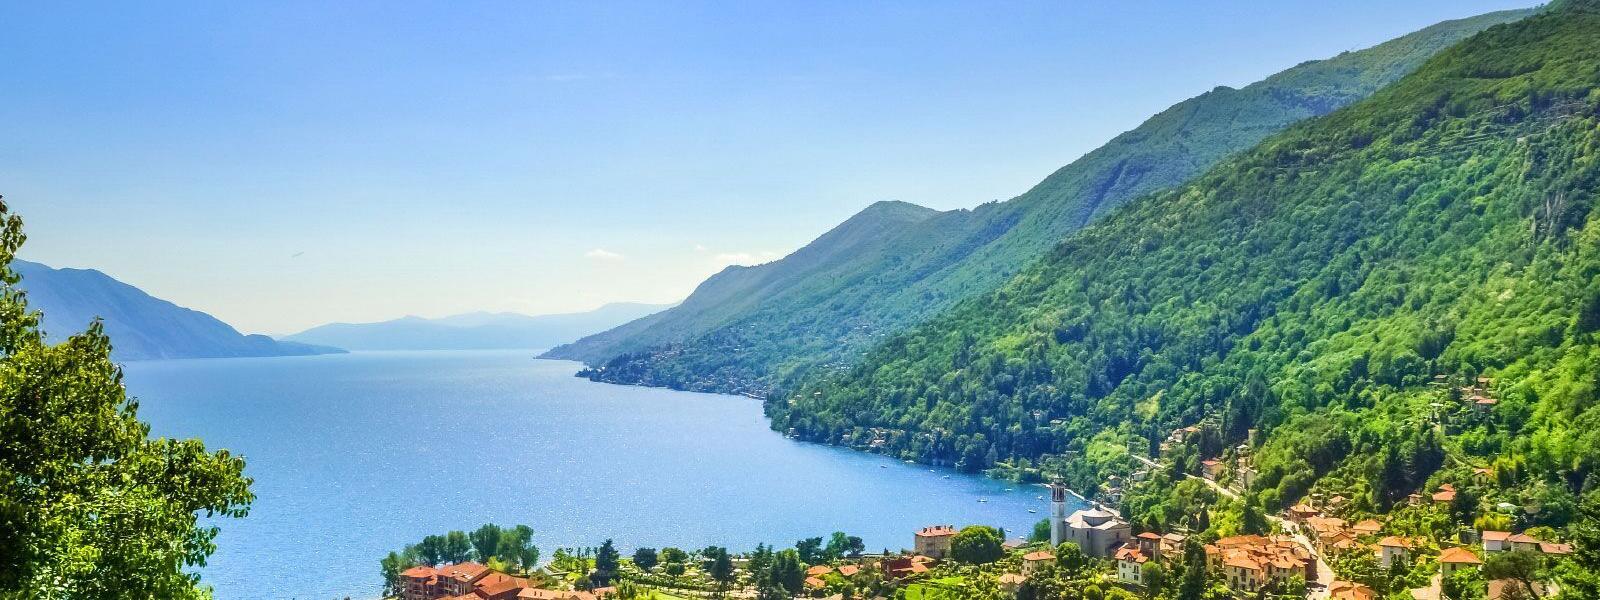 Mit Ferienhaus oder Fewo in Luino den Urlaub am Lago Maggiore verbringen - e-domizil